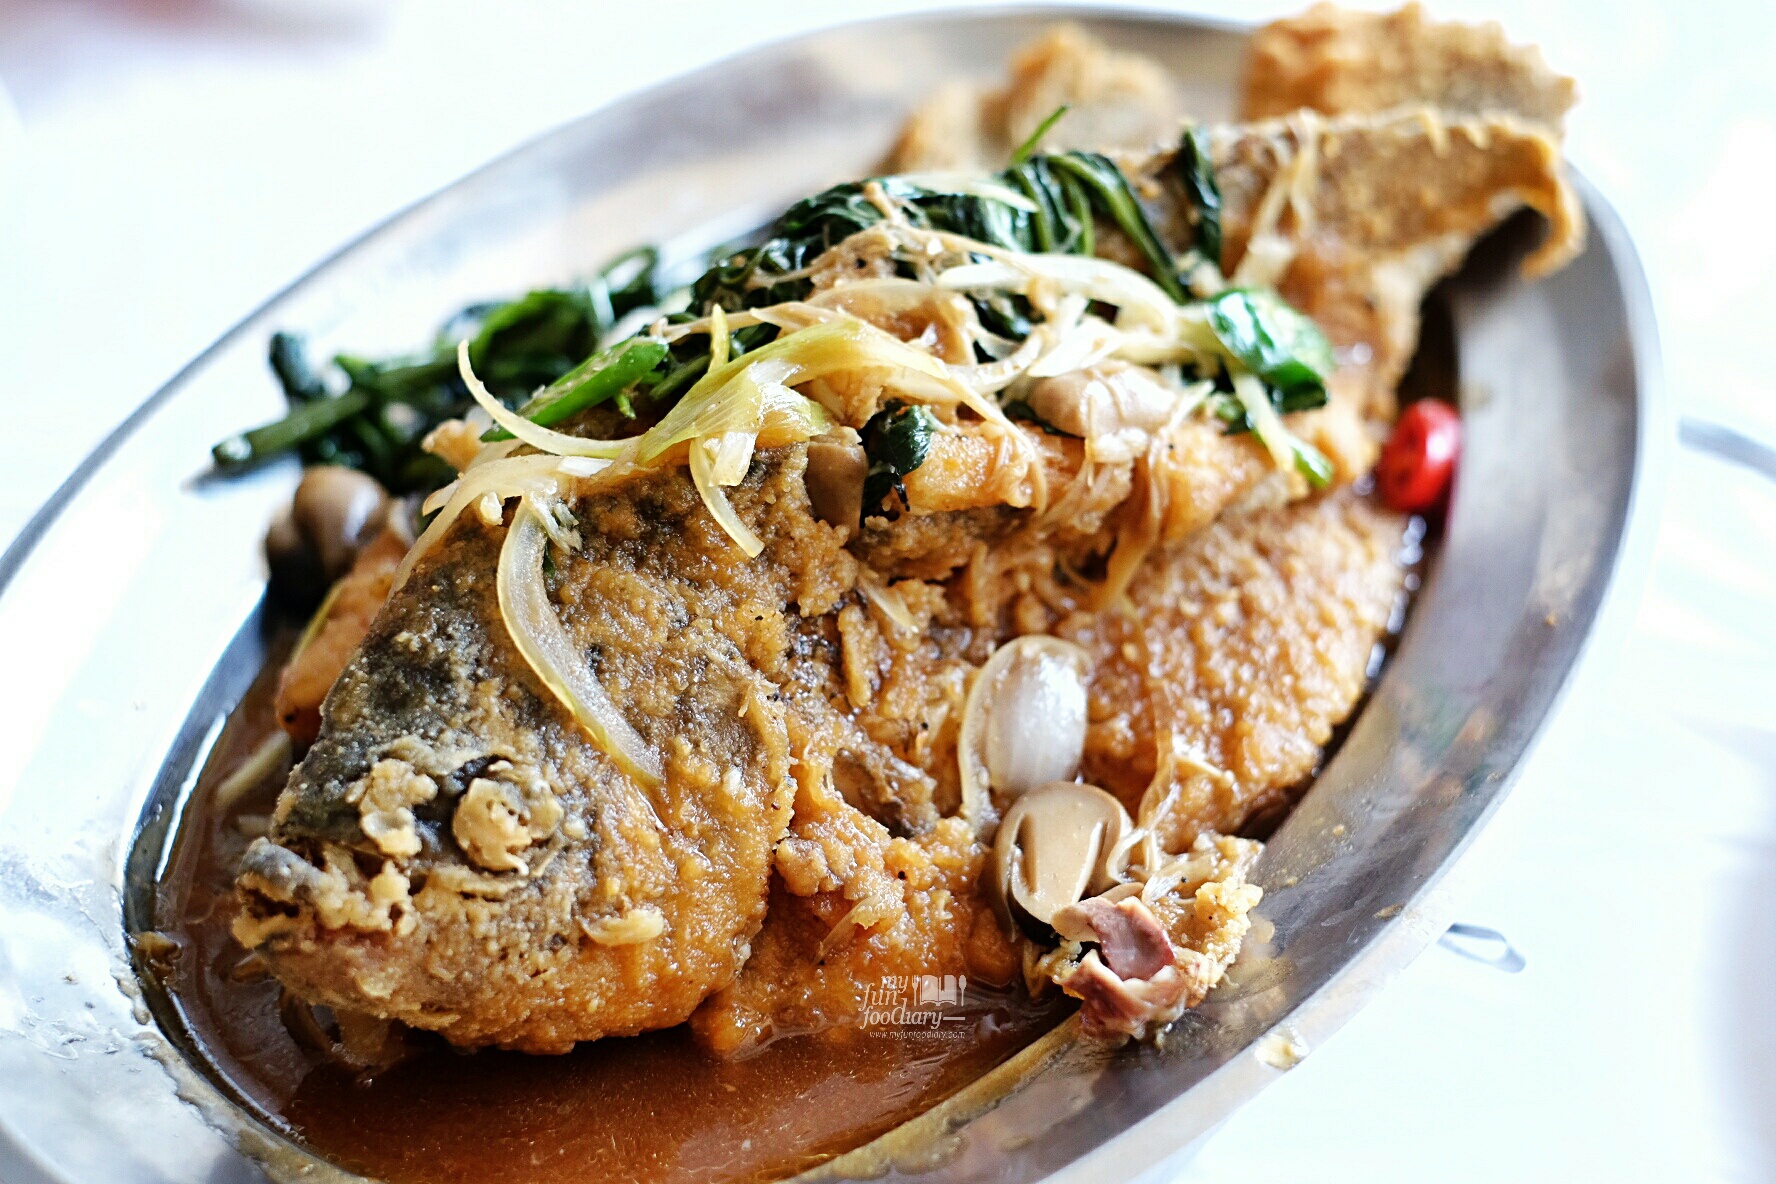 Gurame Goreng ala Layar at Layar Seafood Jakarta by Myfunfoodiary